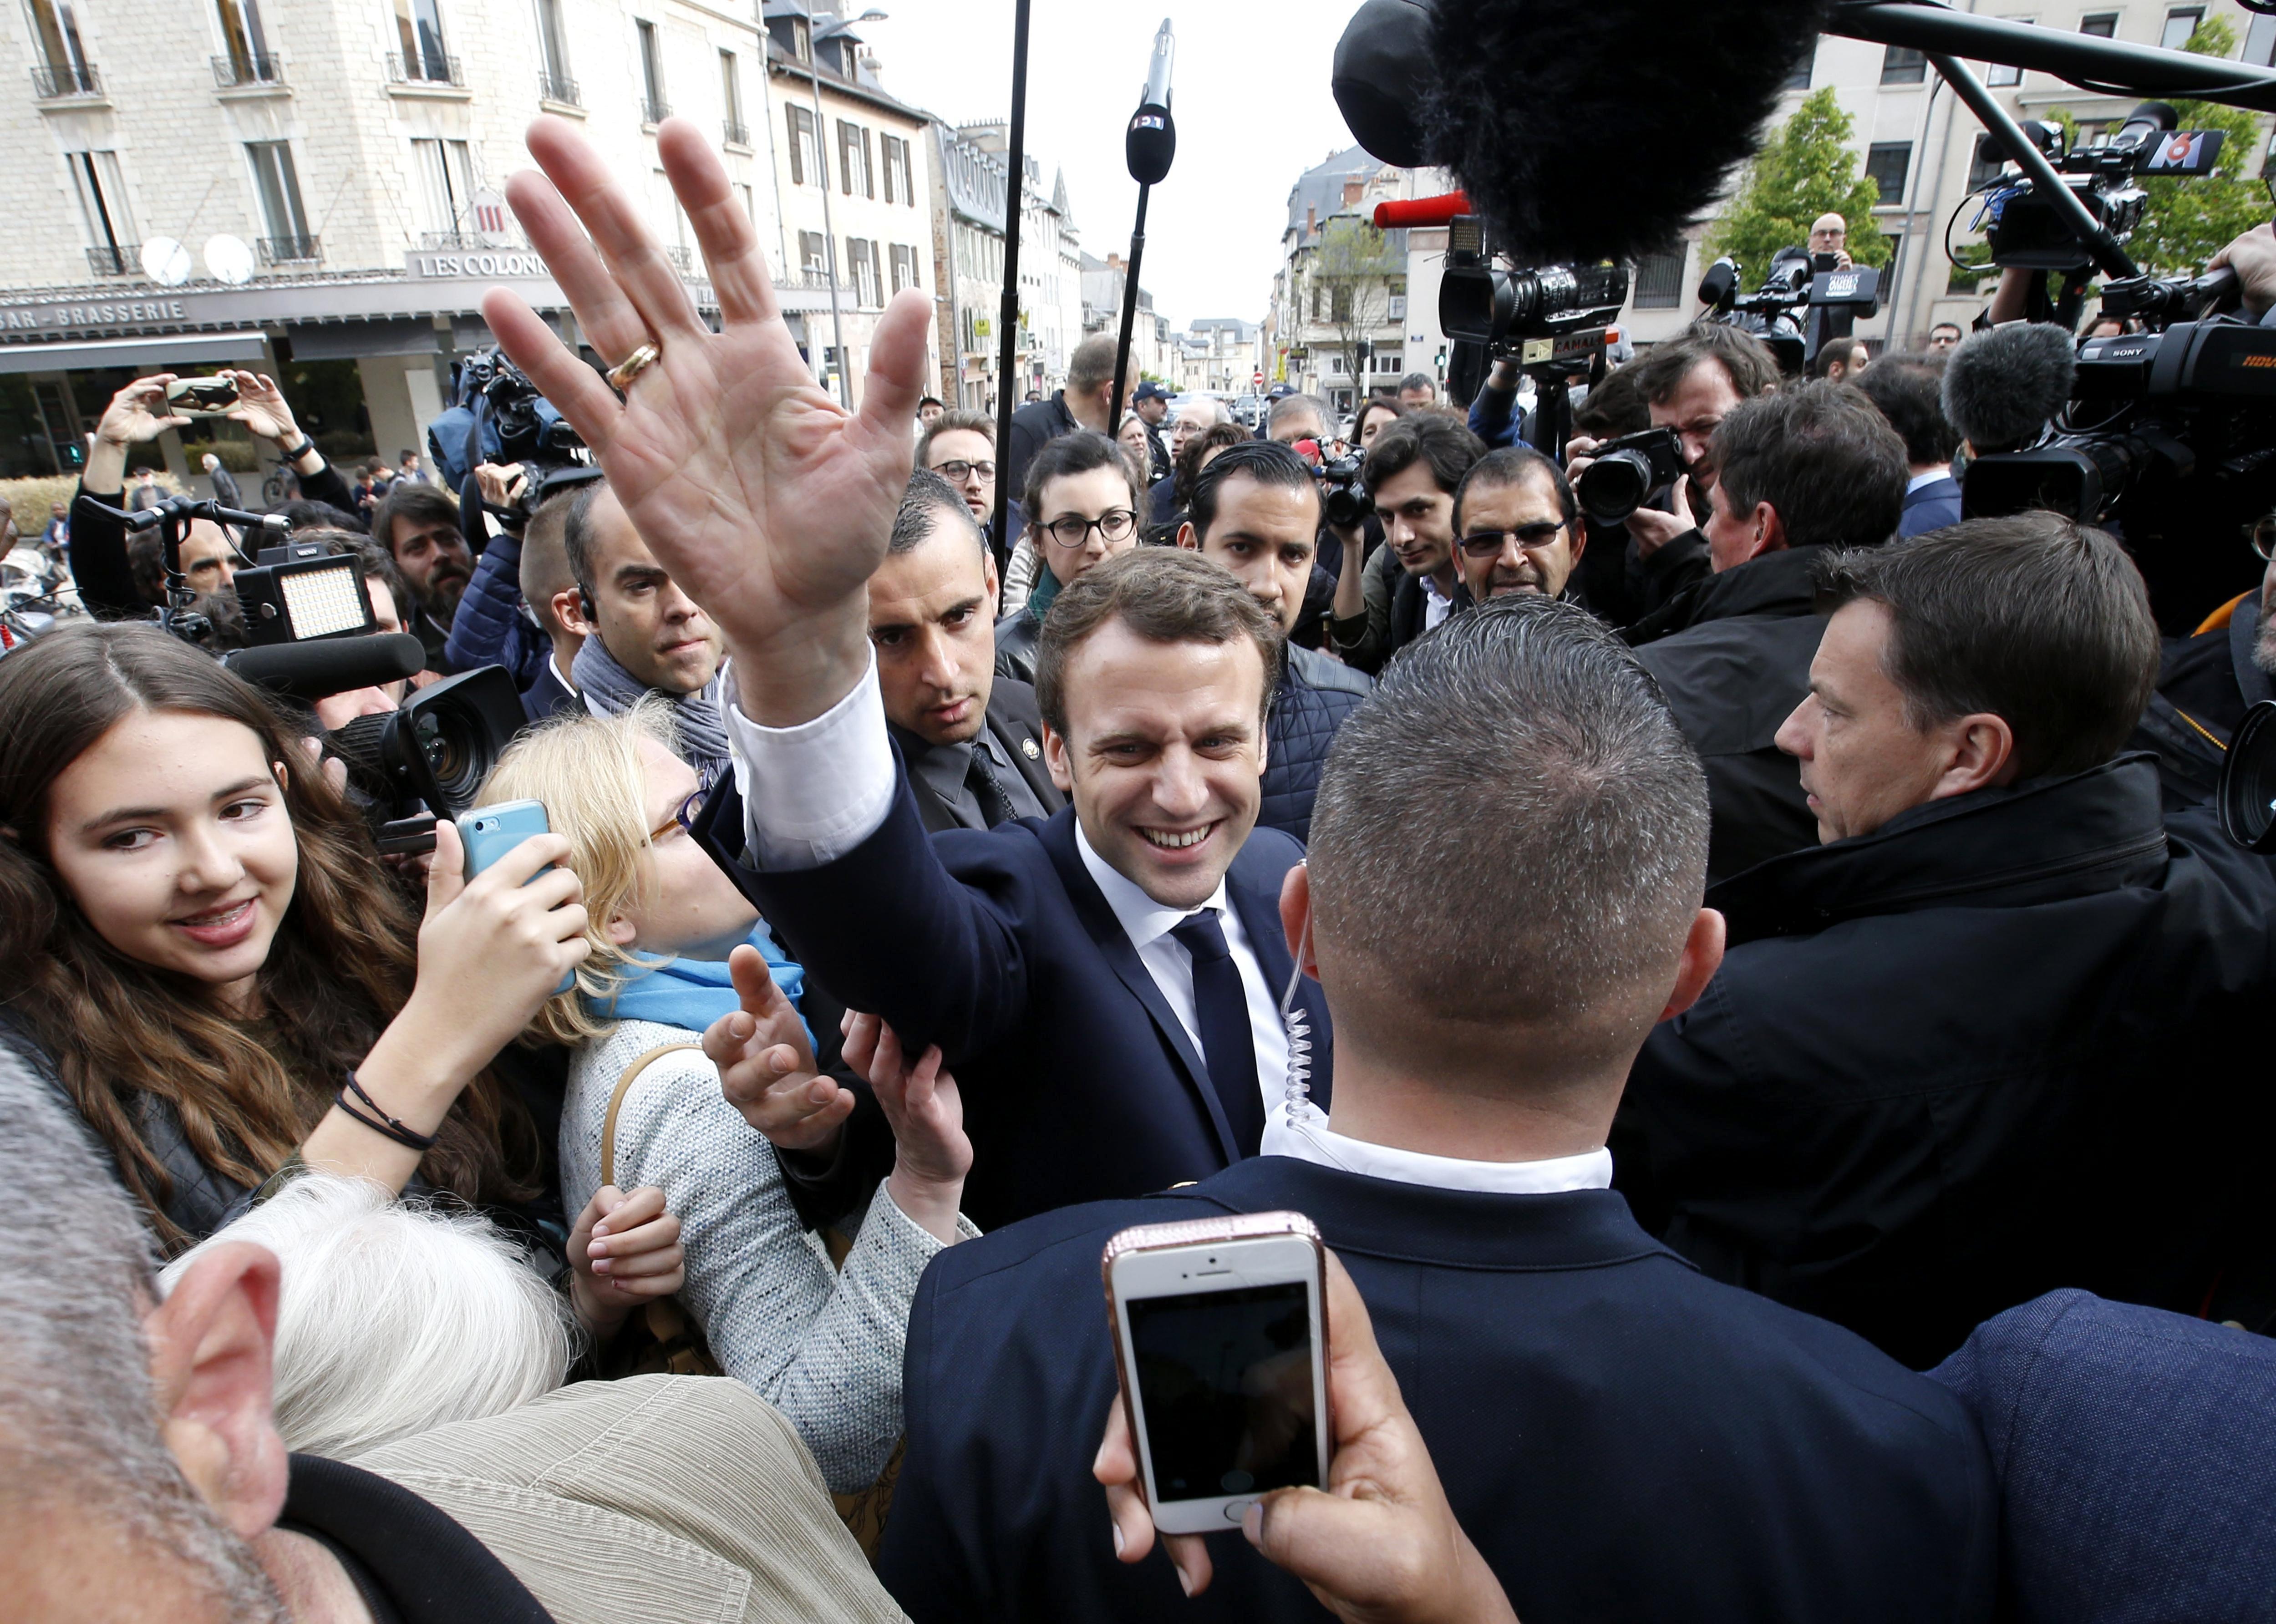 Las últimas encuestas amplían la ventaja de Macron frente a Le Pen